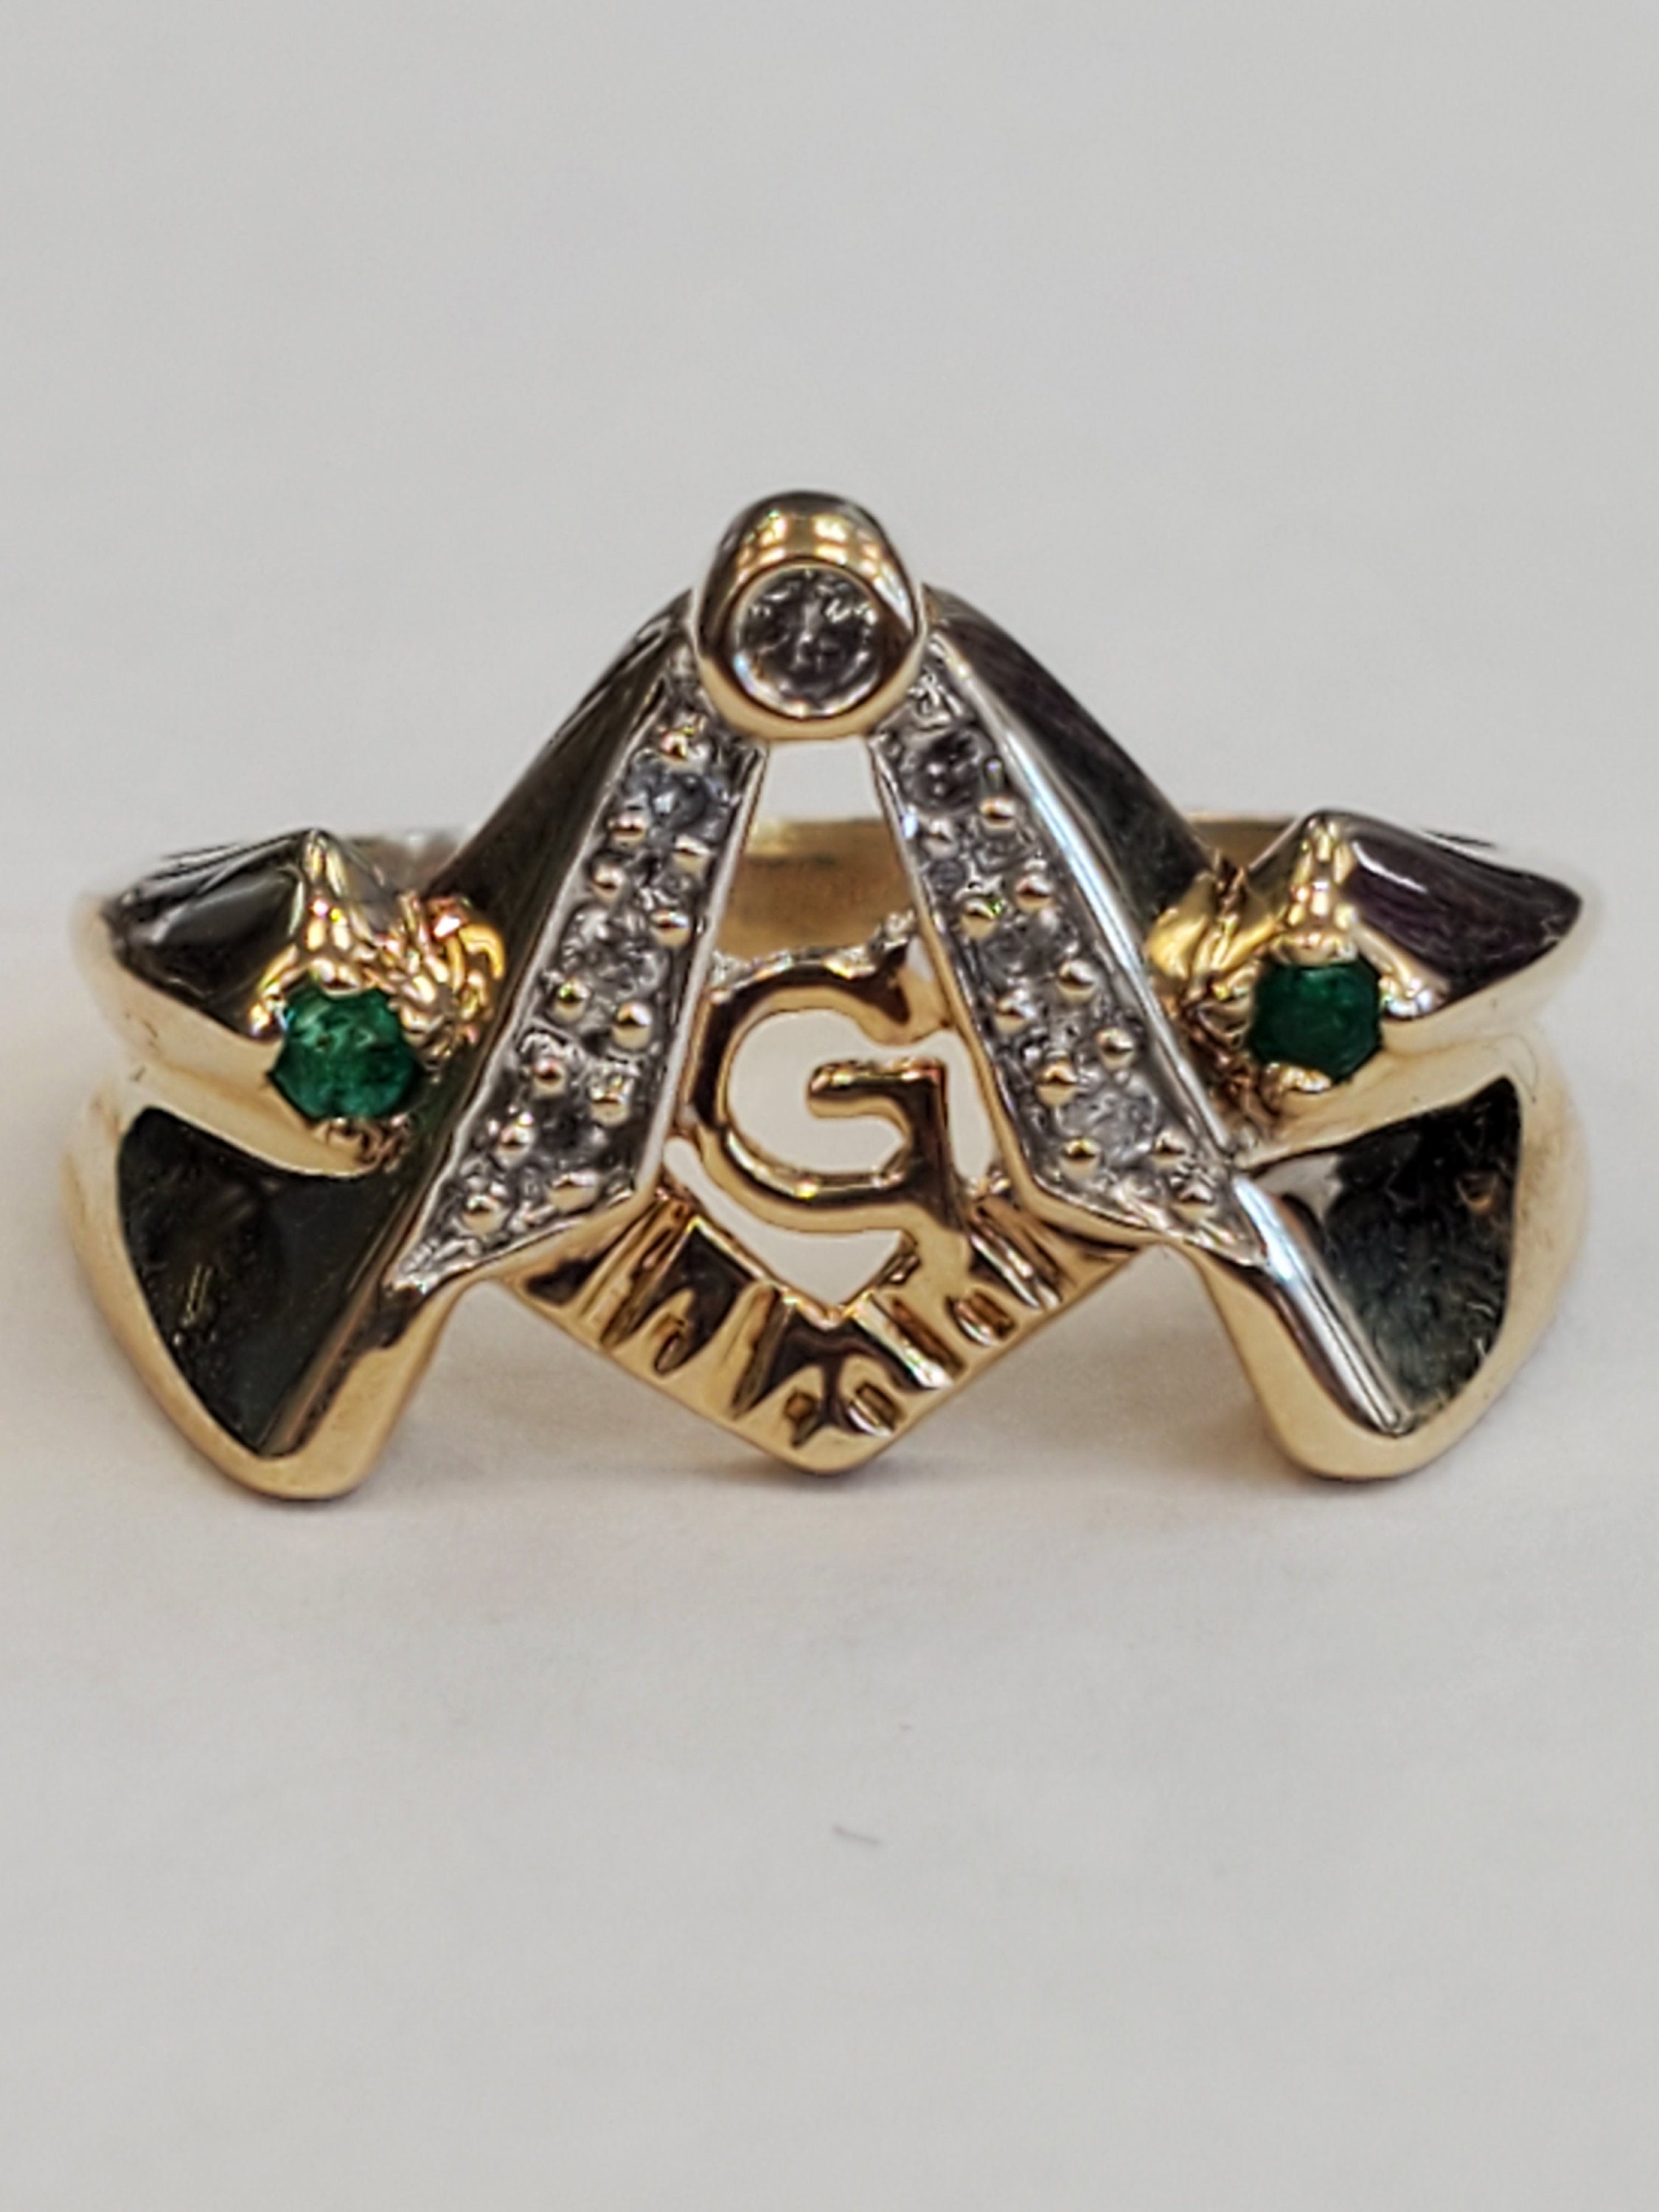 Mason Masonic Emerald and Diamond Square and Compass Ring 10k Yellow Gold Size 9